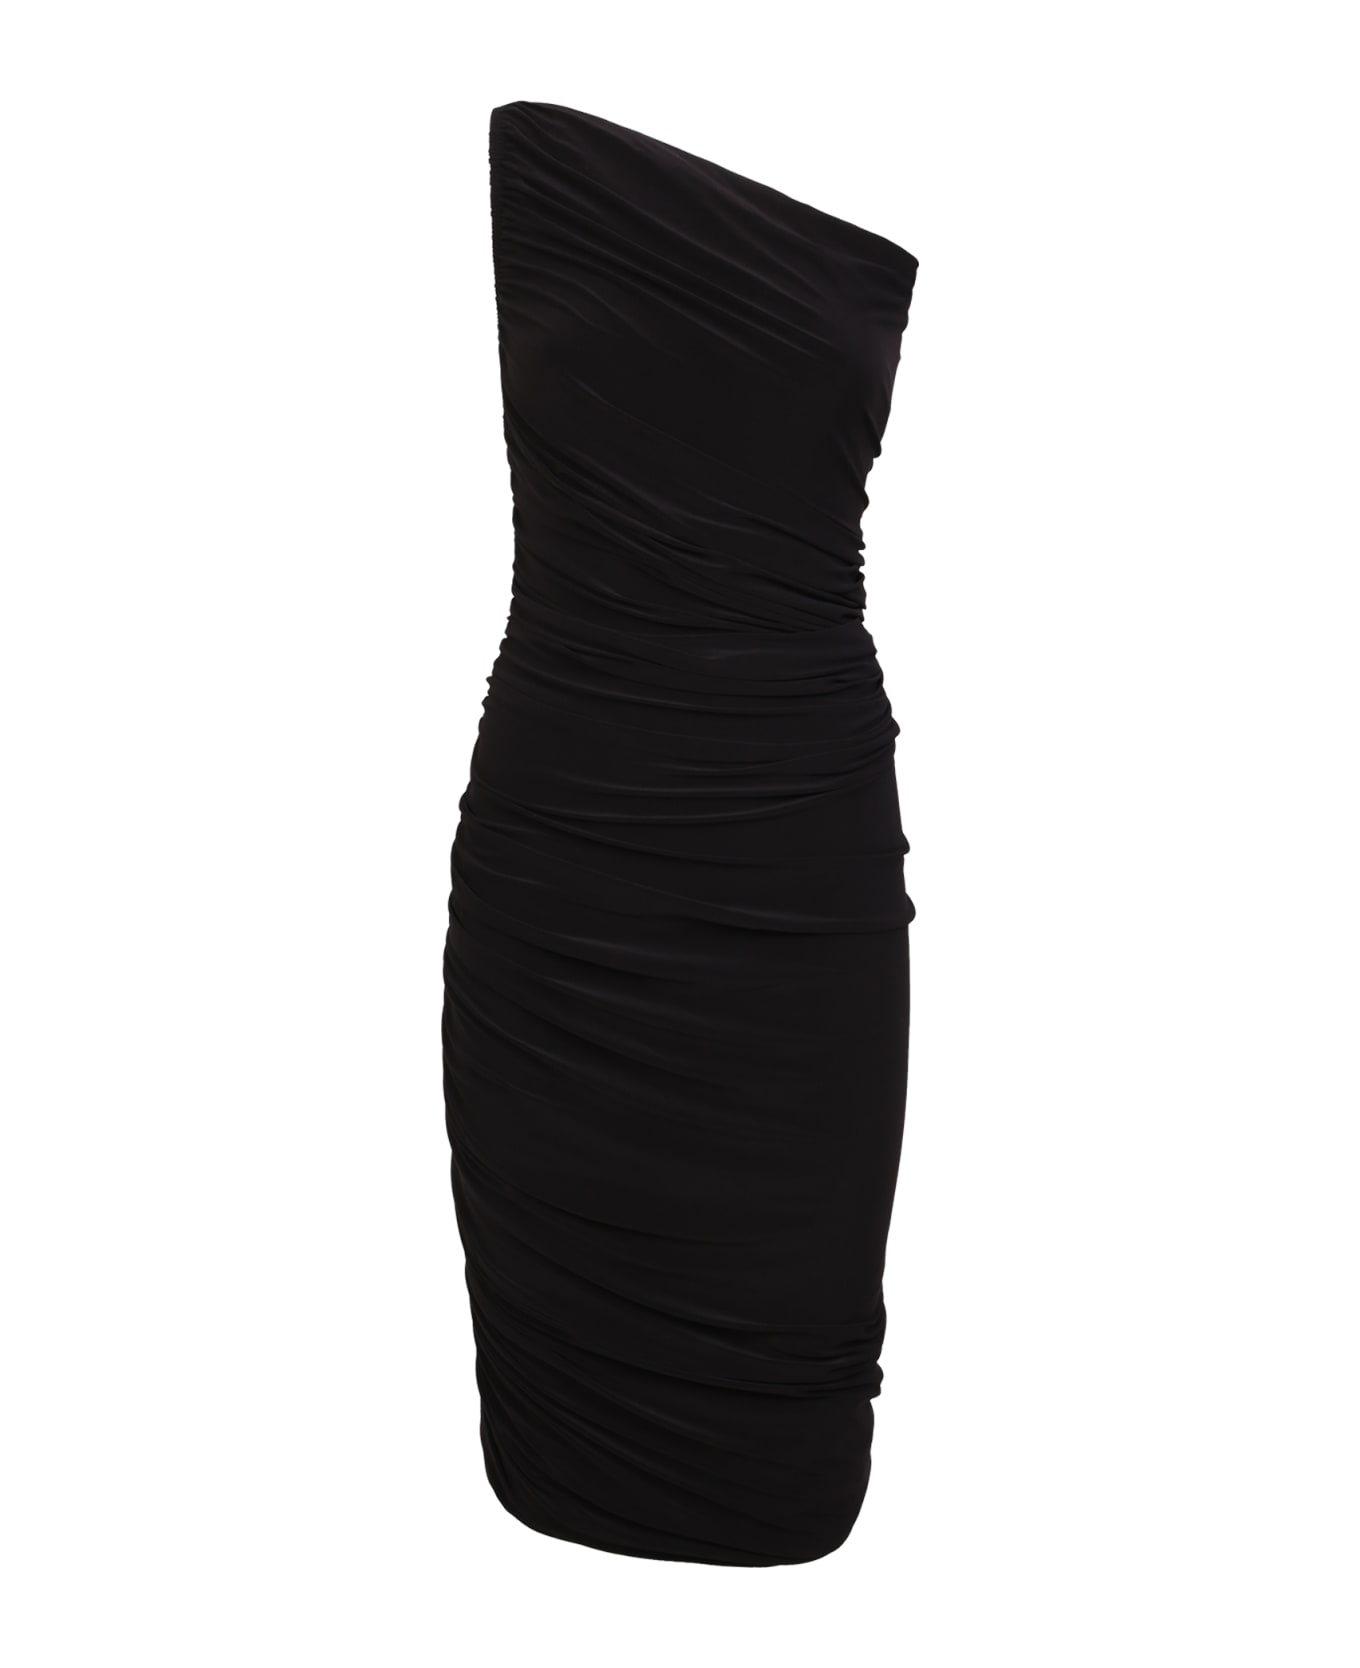 Norma Kamali Diana One-shoulder Dress Black - Black